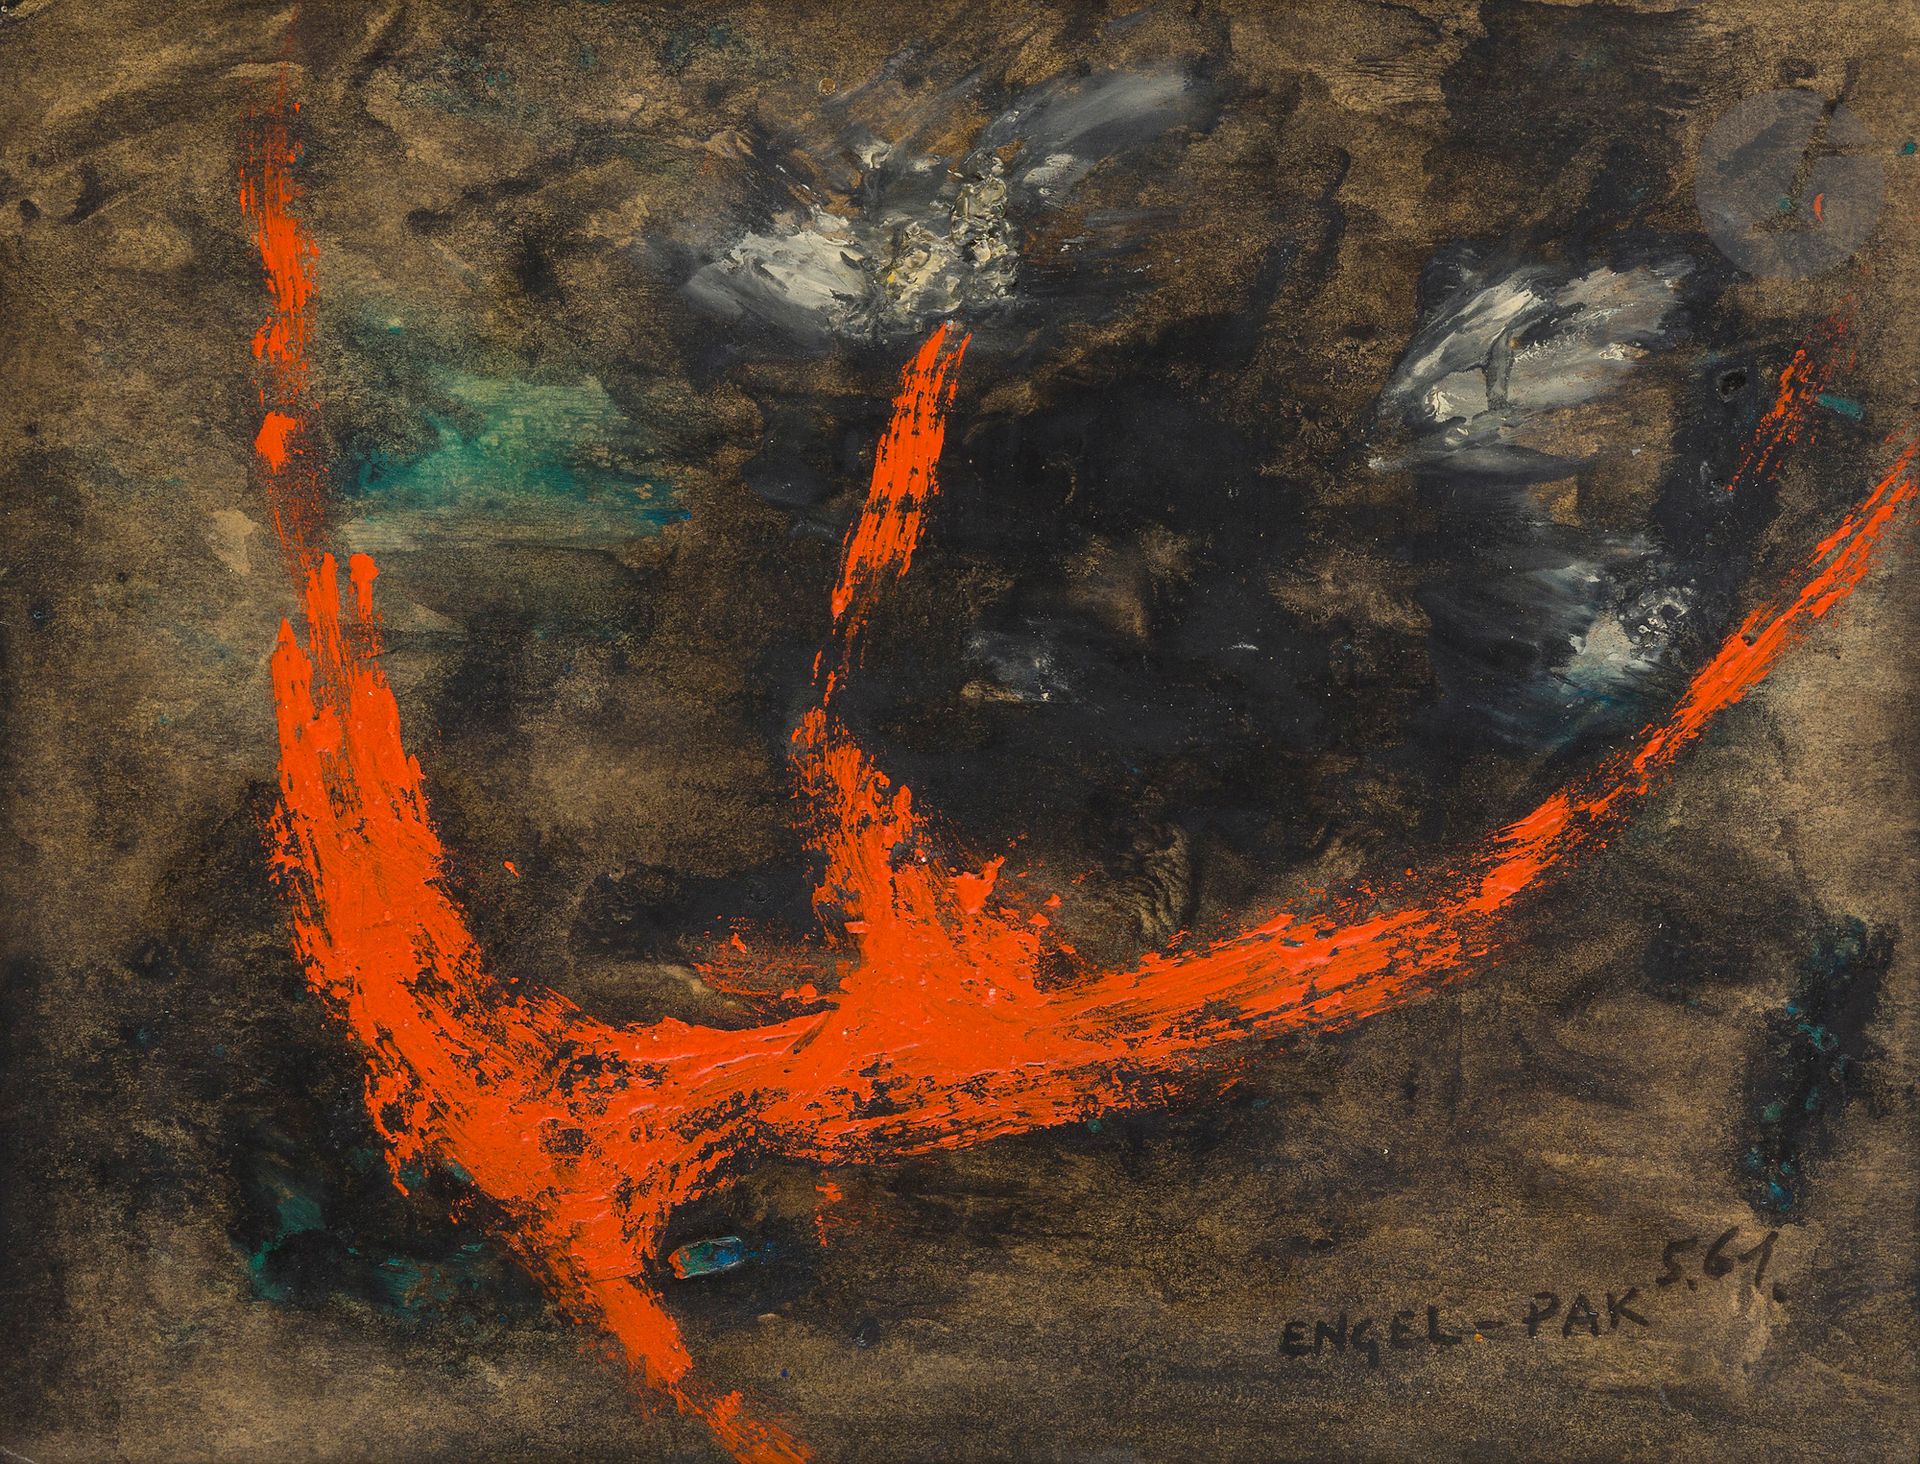 Null Ernest ENGEL-PAK [比利时] (1885-1965
)作品，1961
纸上
油画
。
右下方有签名和日期。
24 x 31,5 cm